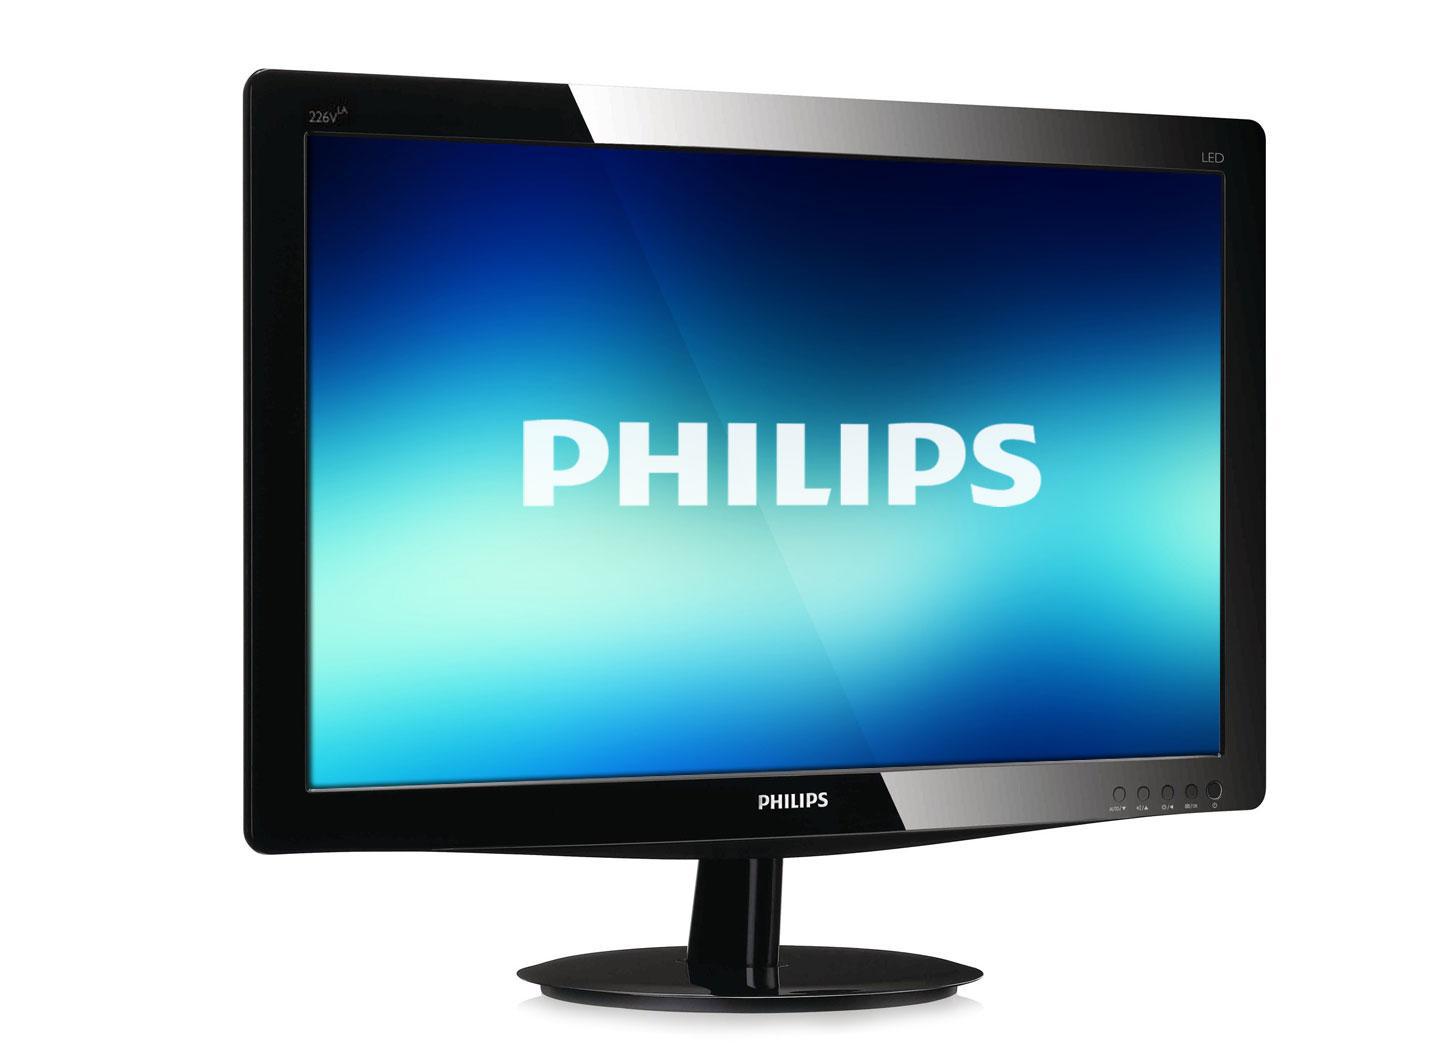   Philips ()     